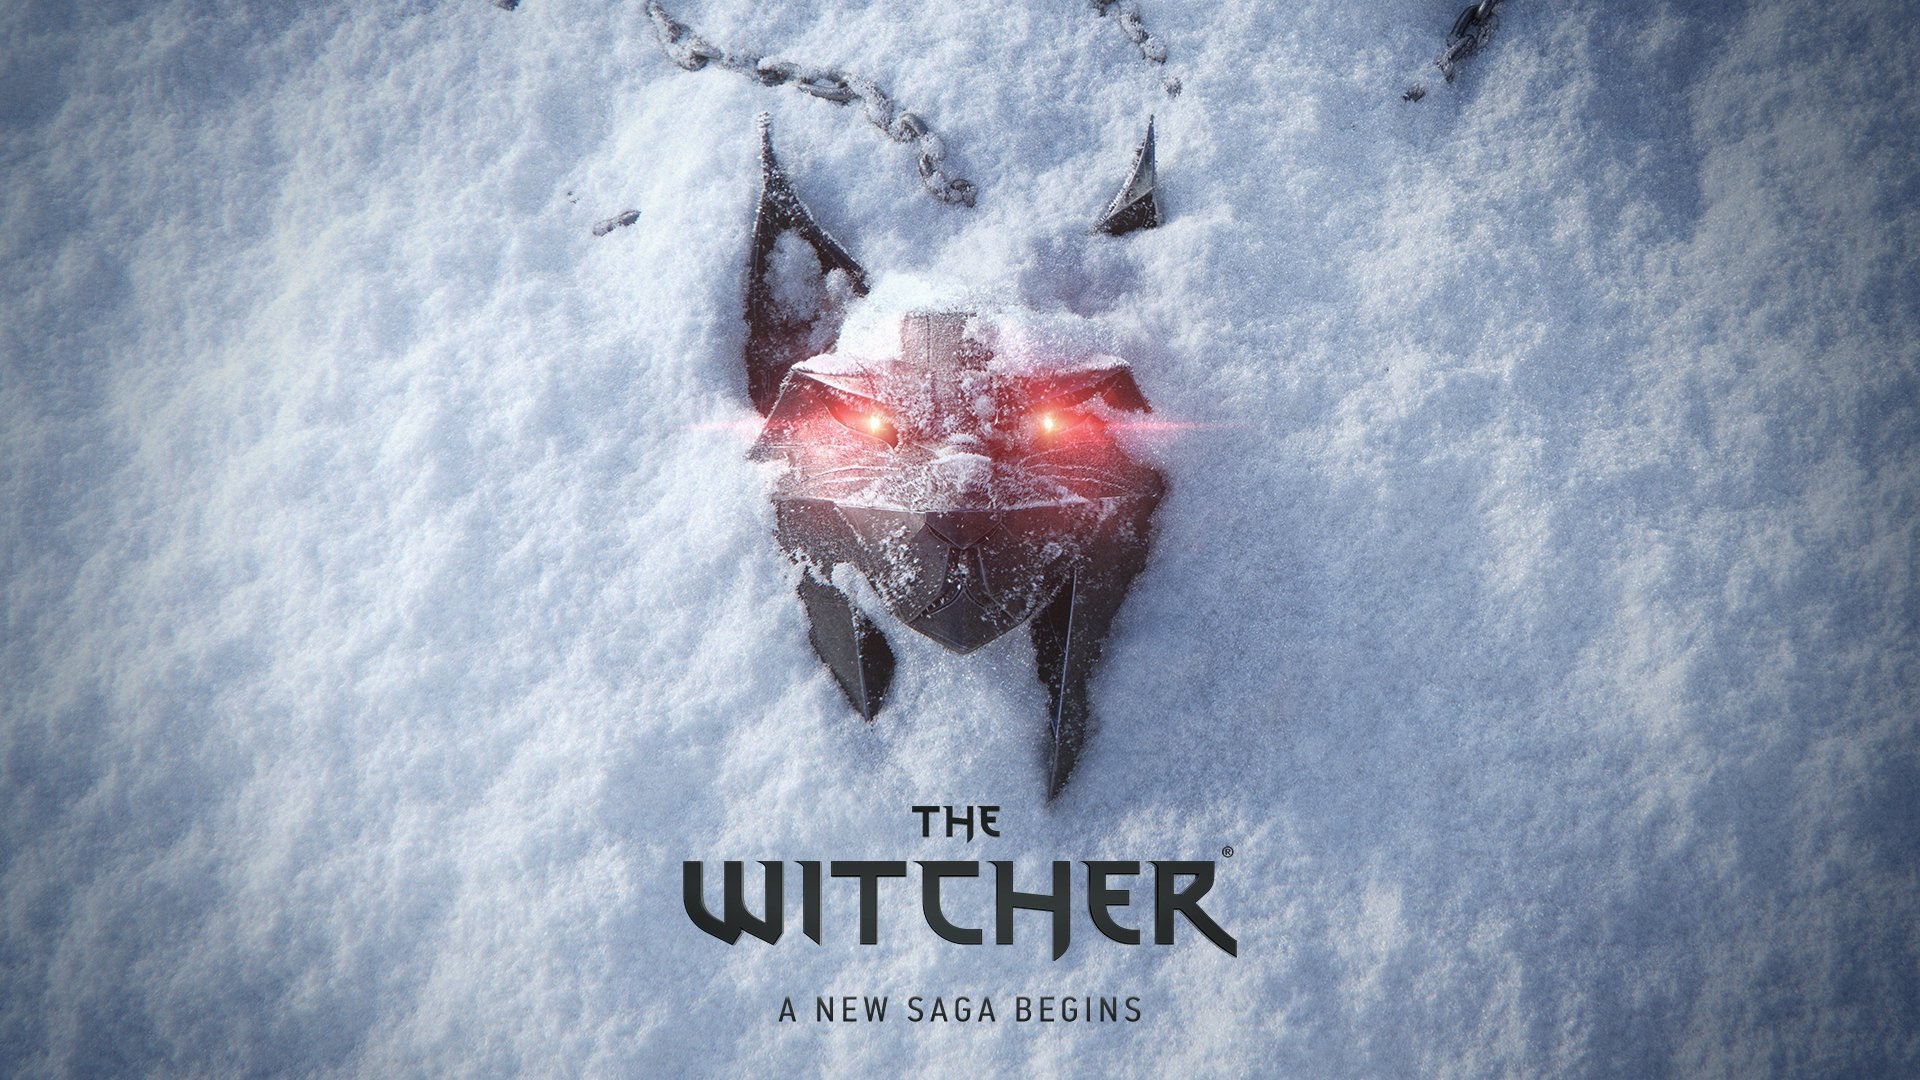 The Witcher : CD Projekt RED mobilise ses troupes autour de la nouvelle trilogie